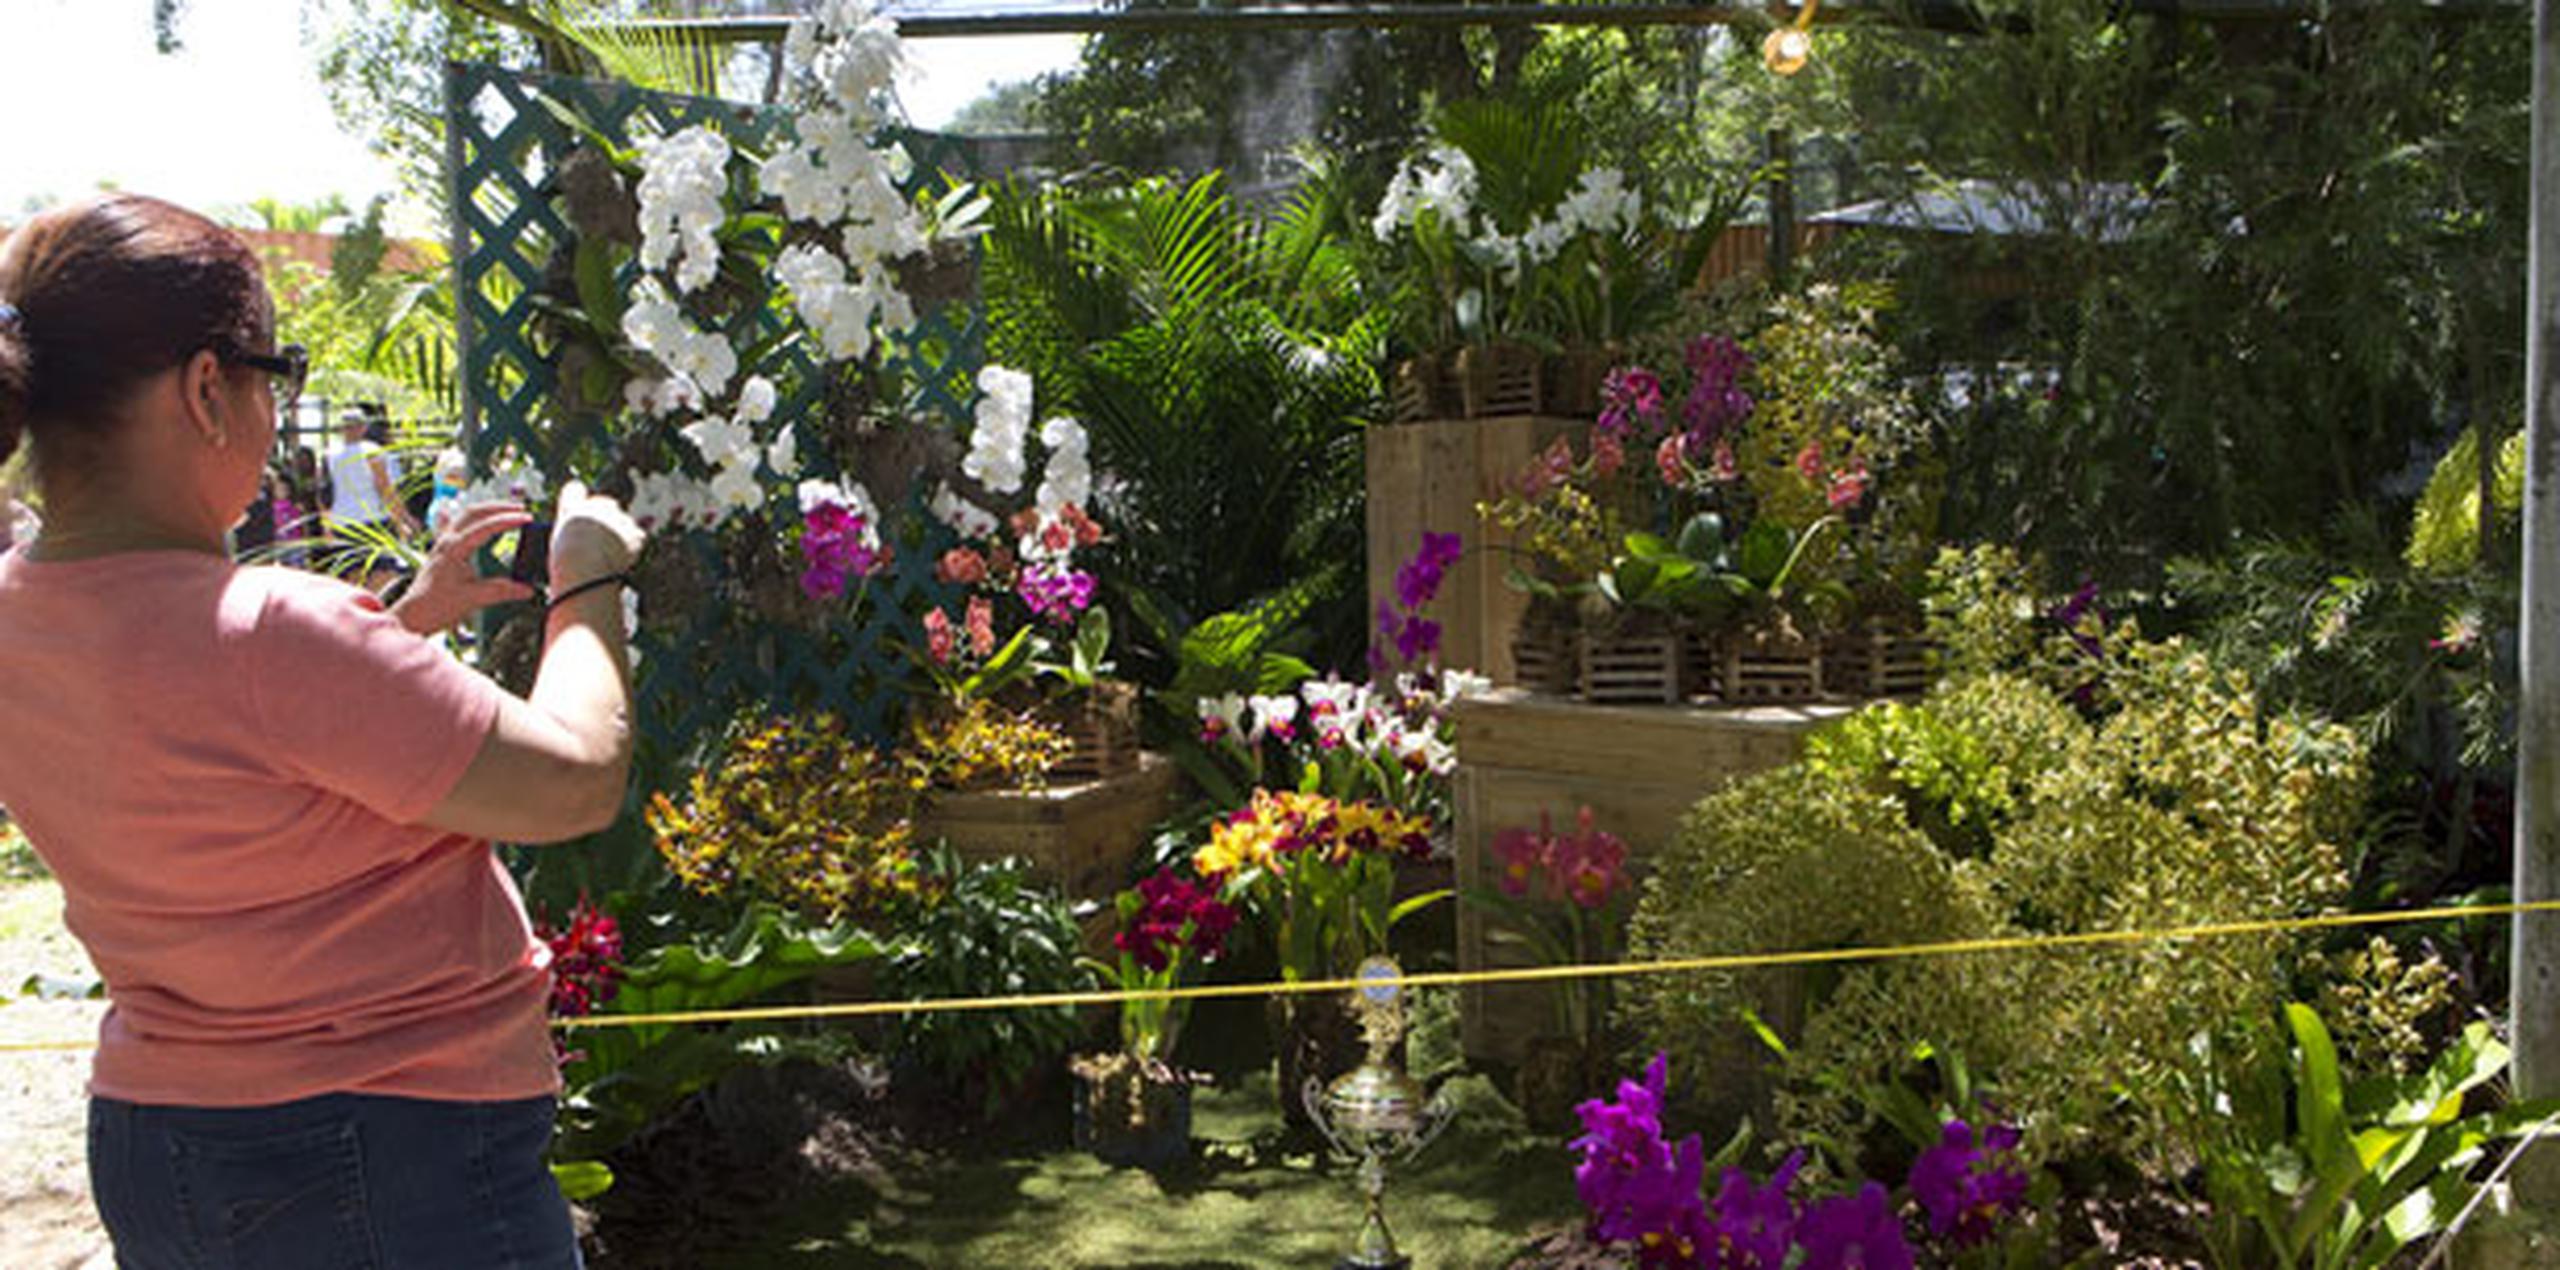 Por más de cuatro décadas, los cerca de 100,000 visitantes que “El Festival de las Flores” recibe cada año se han deleitado la diversidad más grande de flores exóticas y plantas tropicales en Puerto Rico, música y entretenimiento para toda la familia. (Archivo)